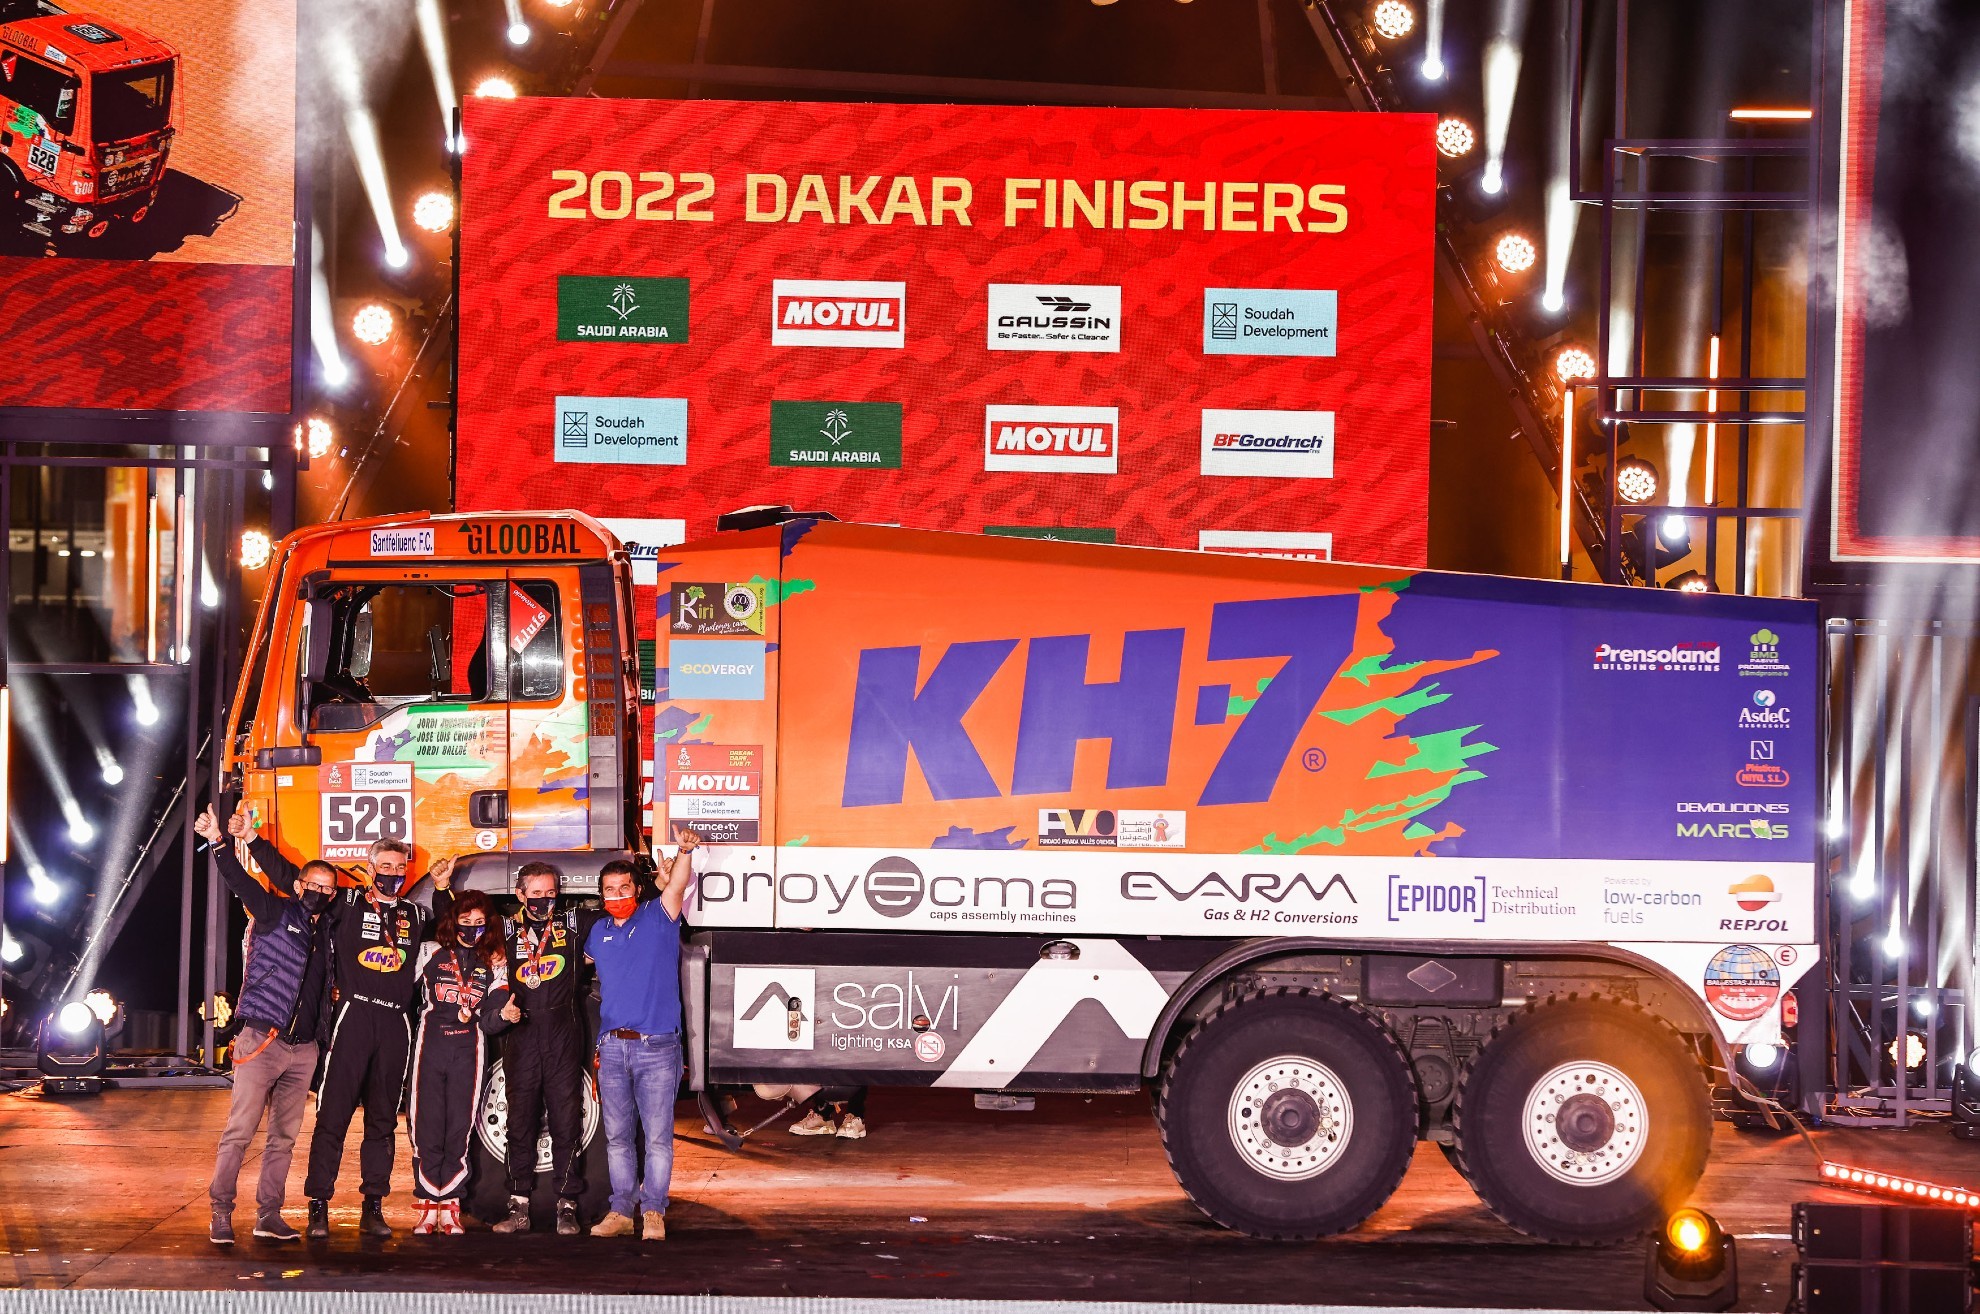 KH7 - Jordi Juvanteny - Fina Roman - camiones - Dakar 2022 - finishers